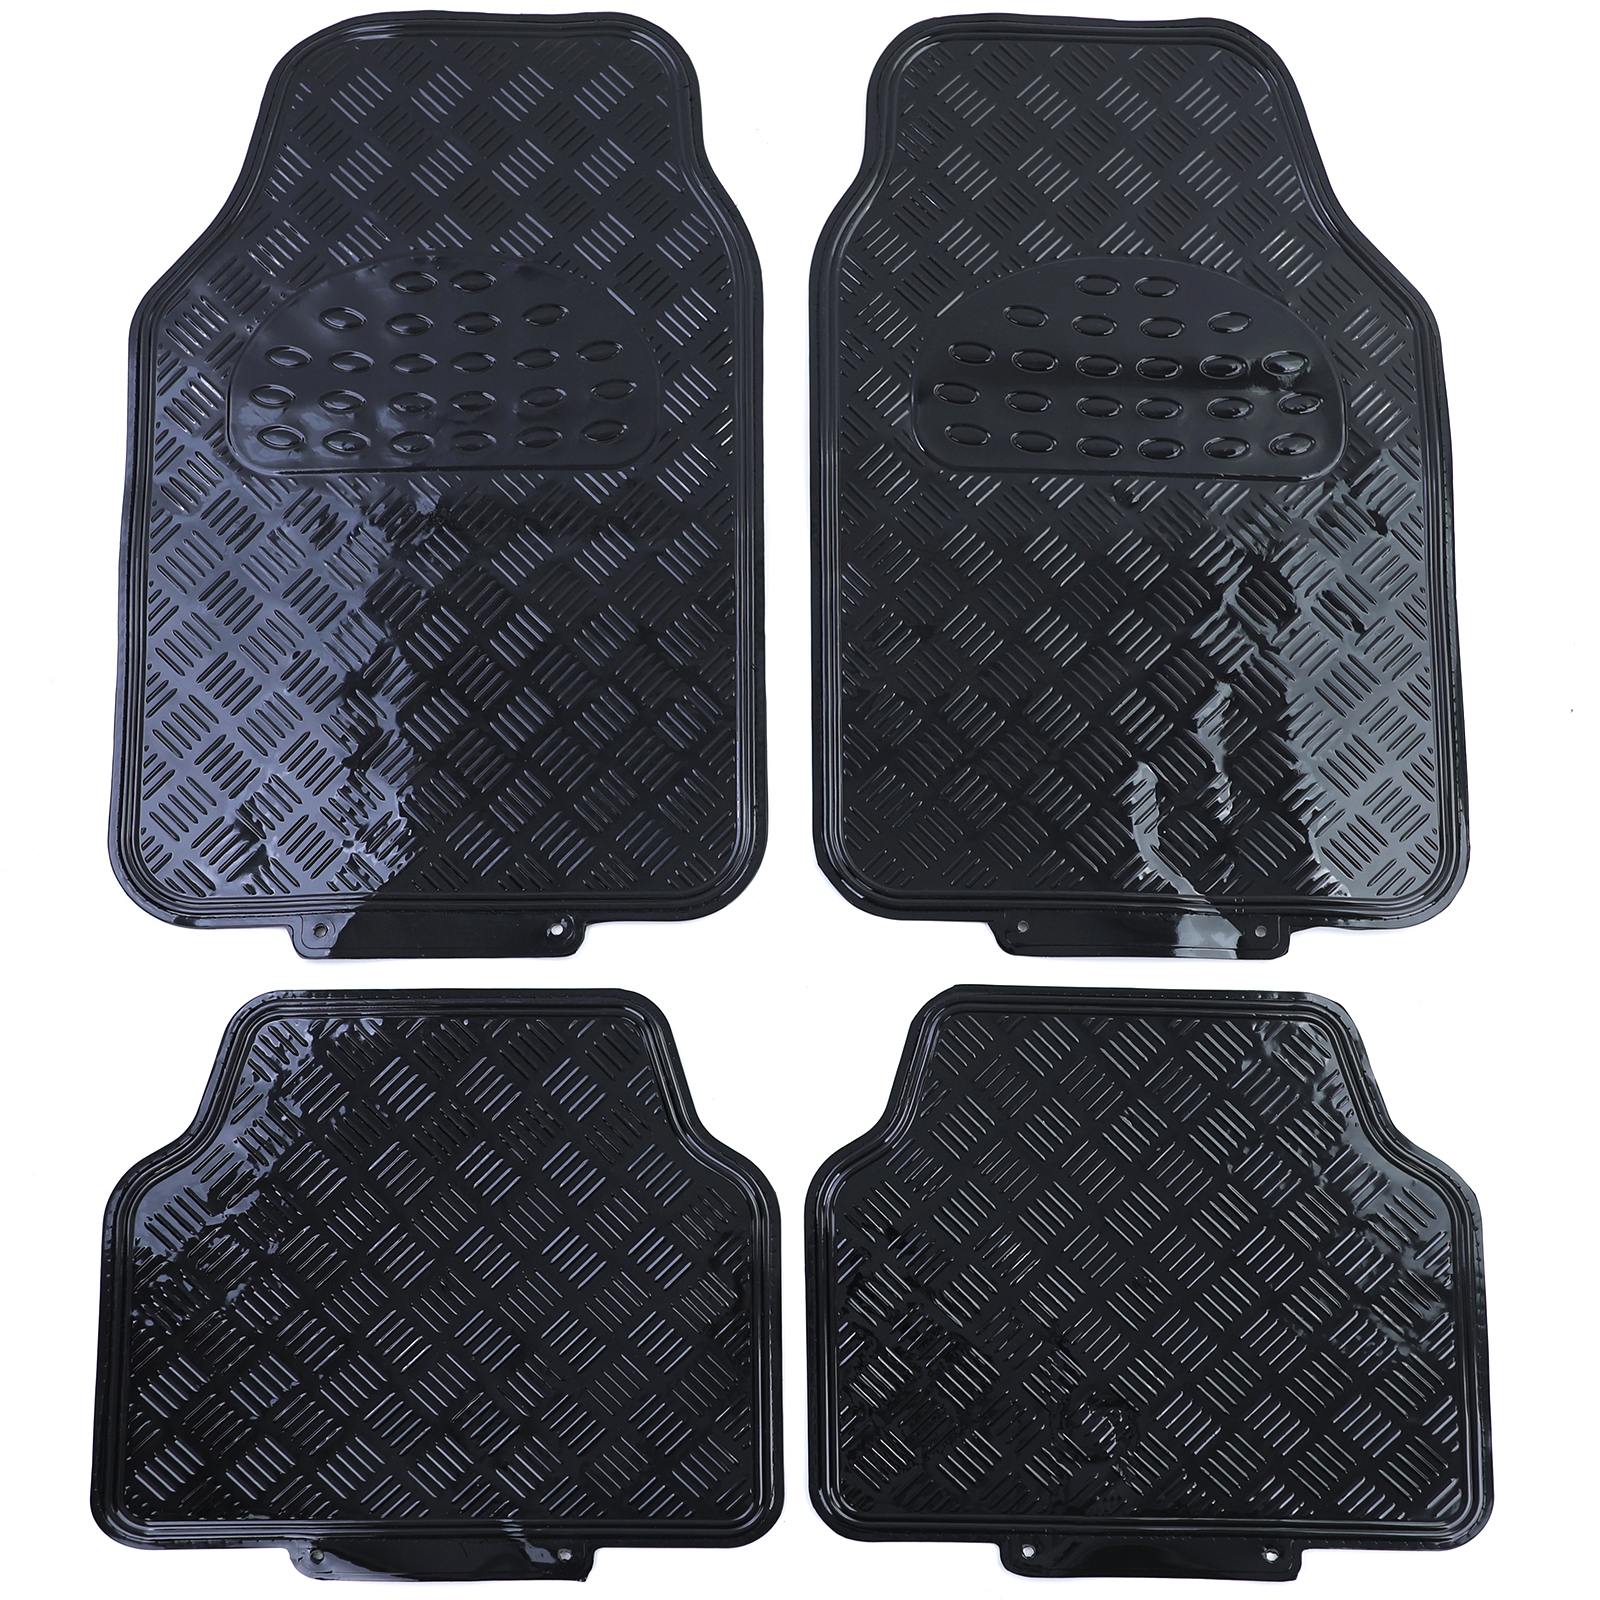 Fußmatte Auto Fußmatten Set universal Alu Riffelblech Optik Flammen 4-teilig  schwarz rot, Tenzo-R